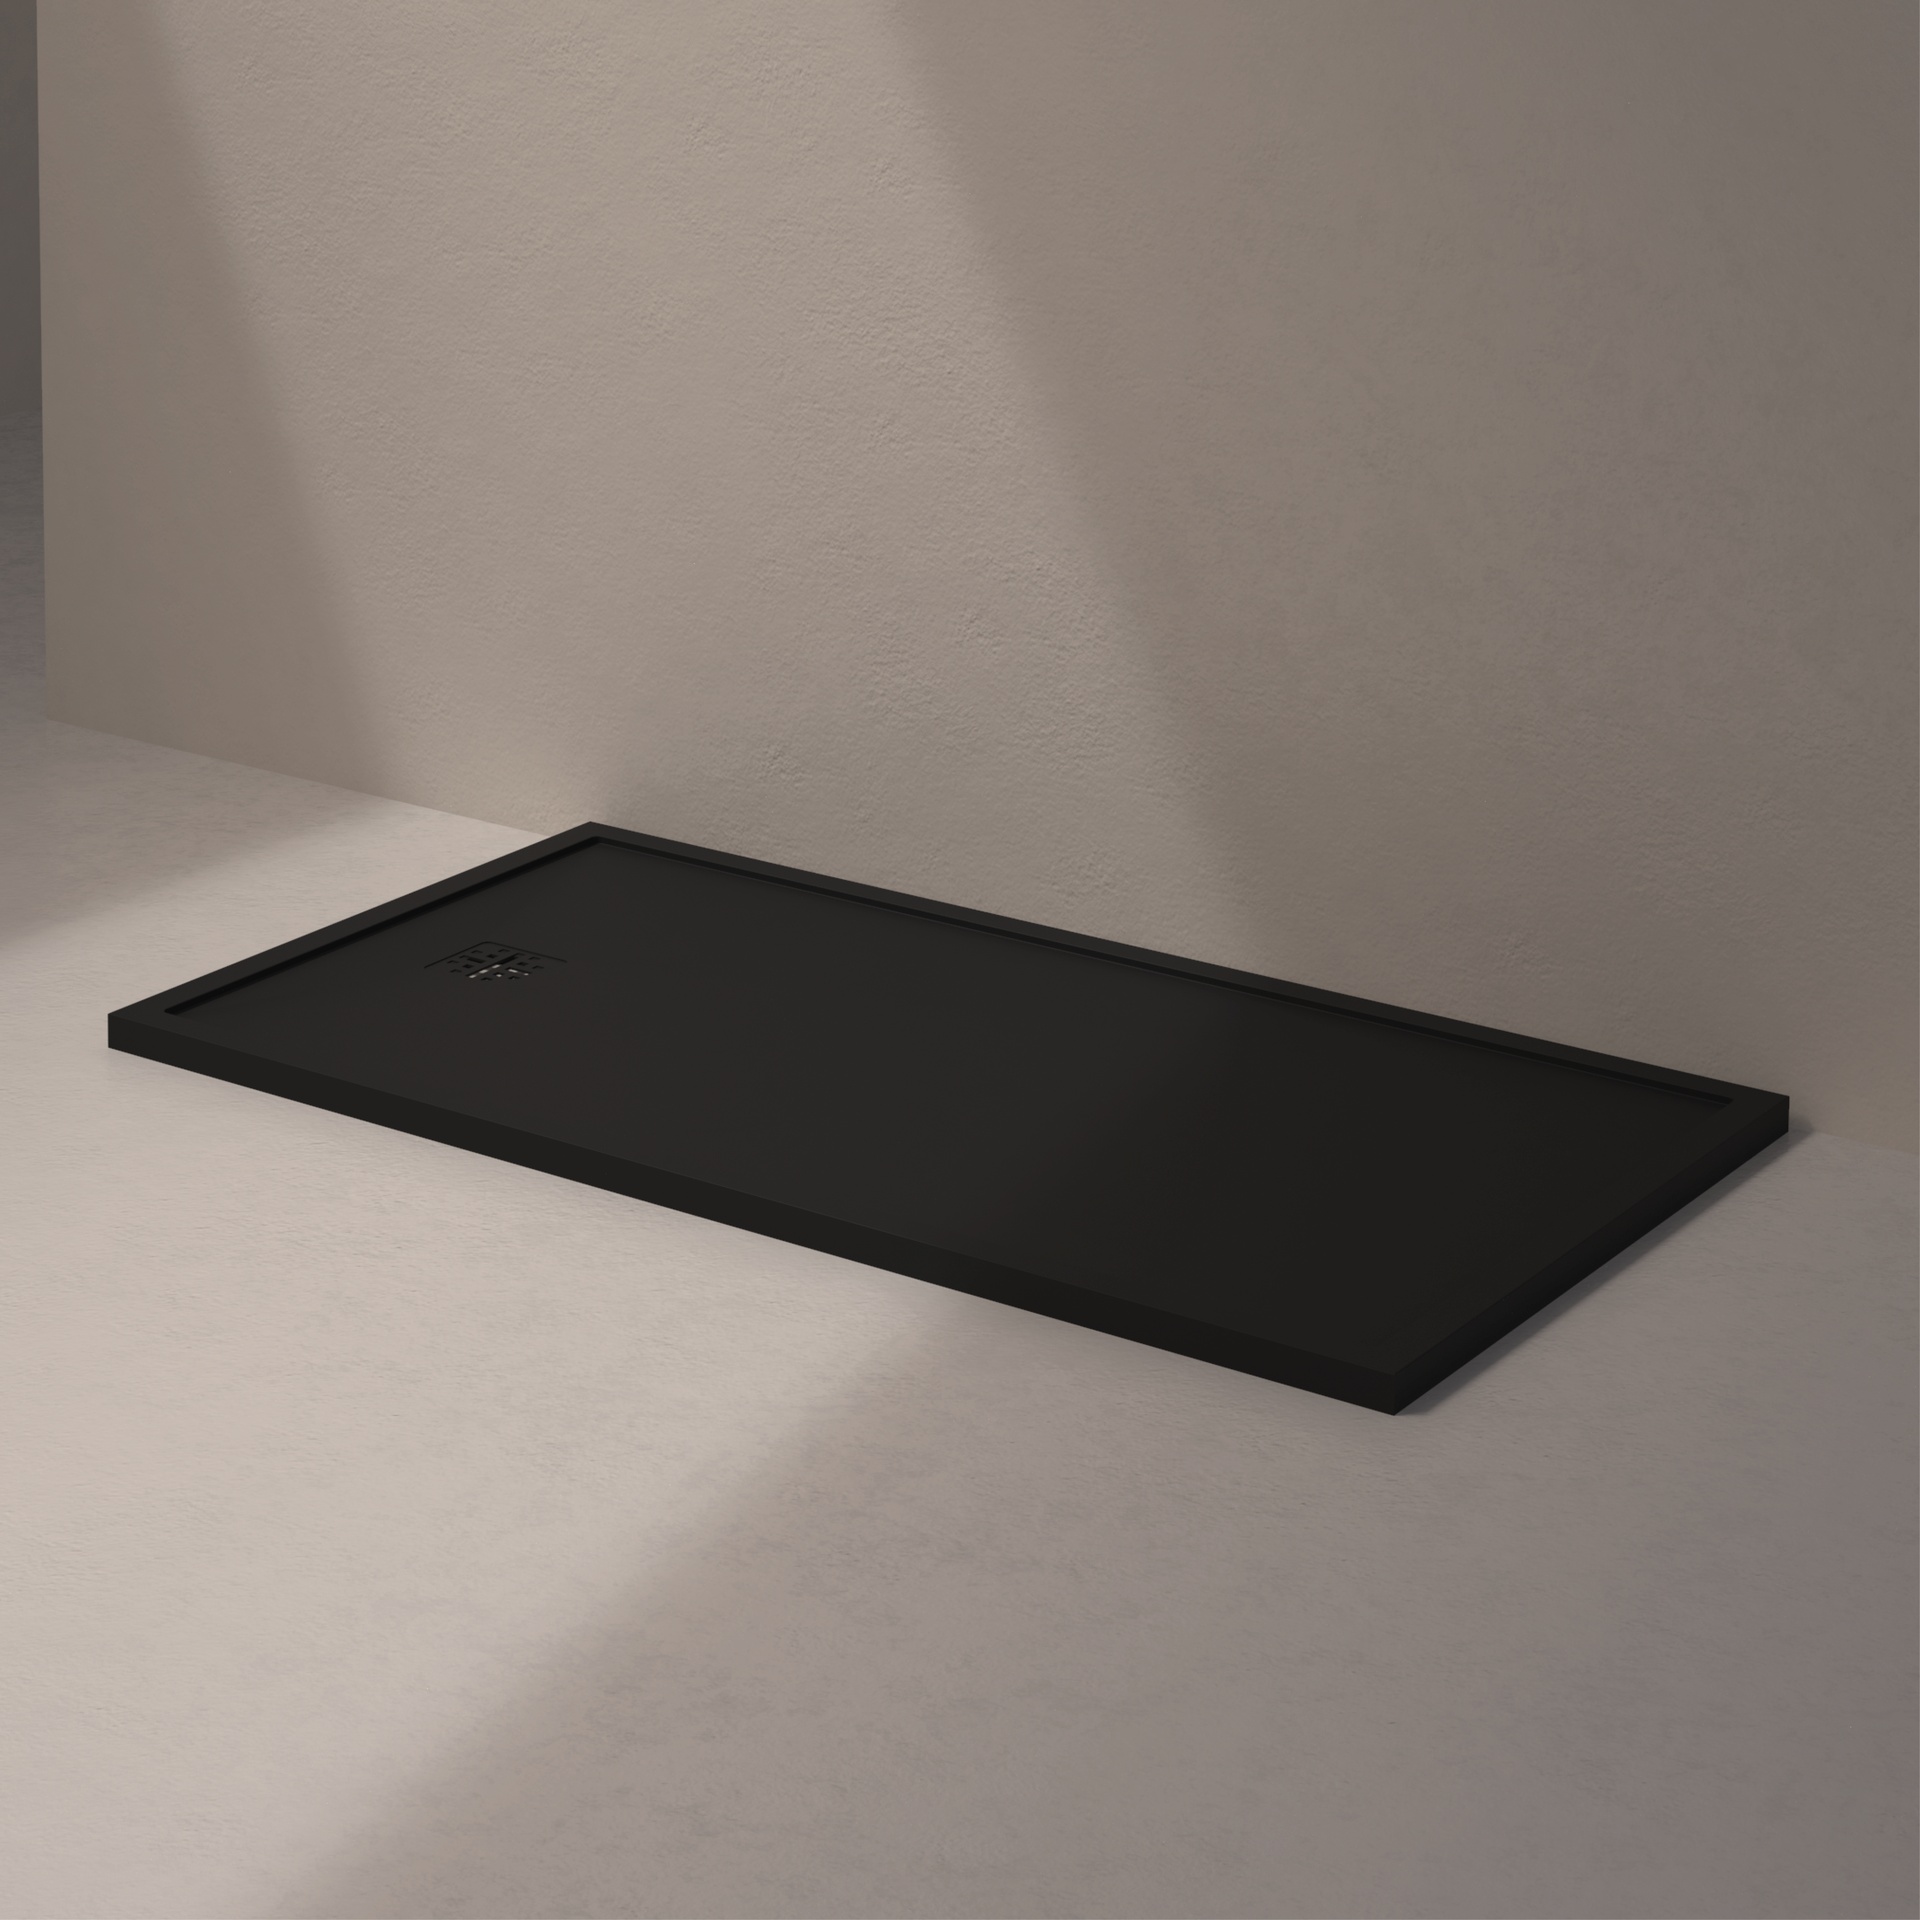 [MSTES90160-BLACK] Mist douche vloer, korte zijde afvoer (160x90, natuursteen zwart)